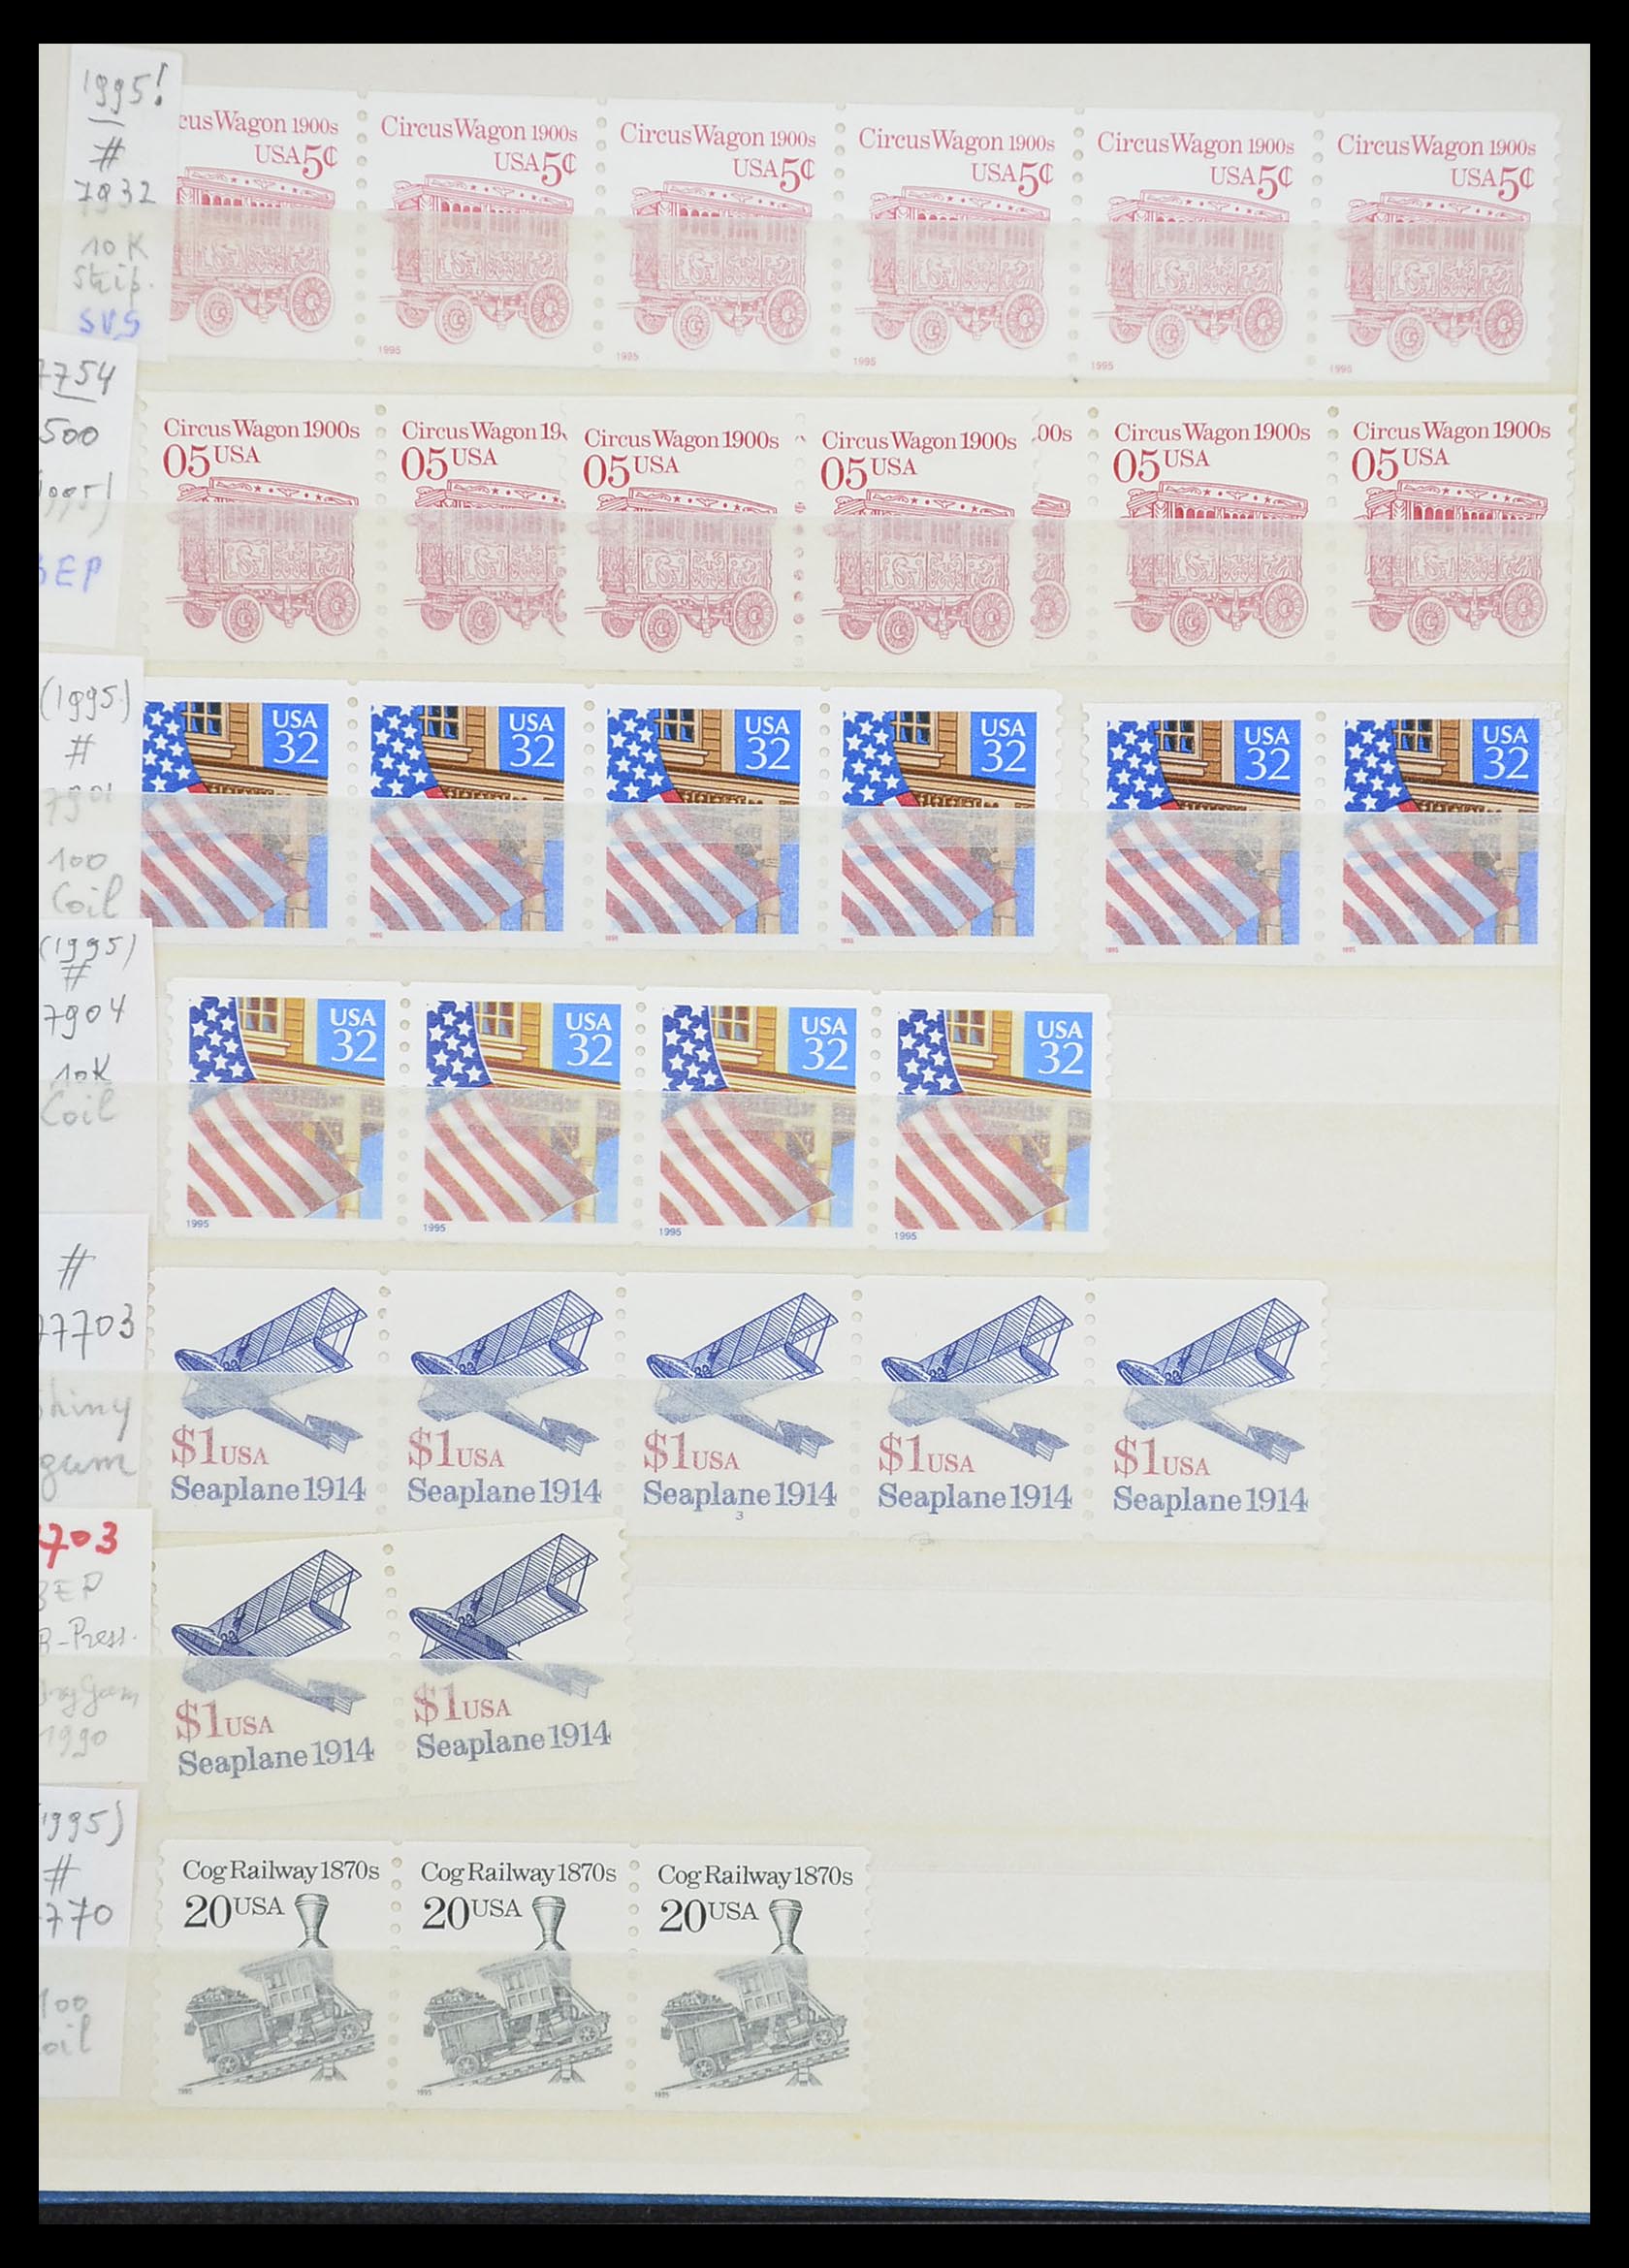 33933 142 - Stamp collection 33933 USA MNH 1945-1996.